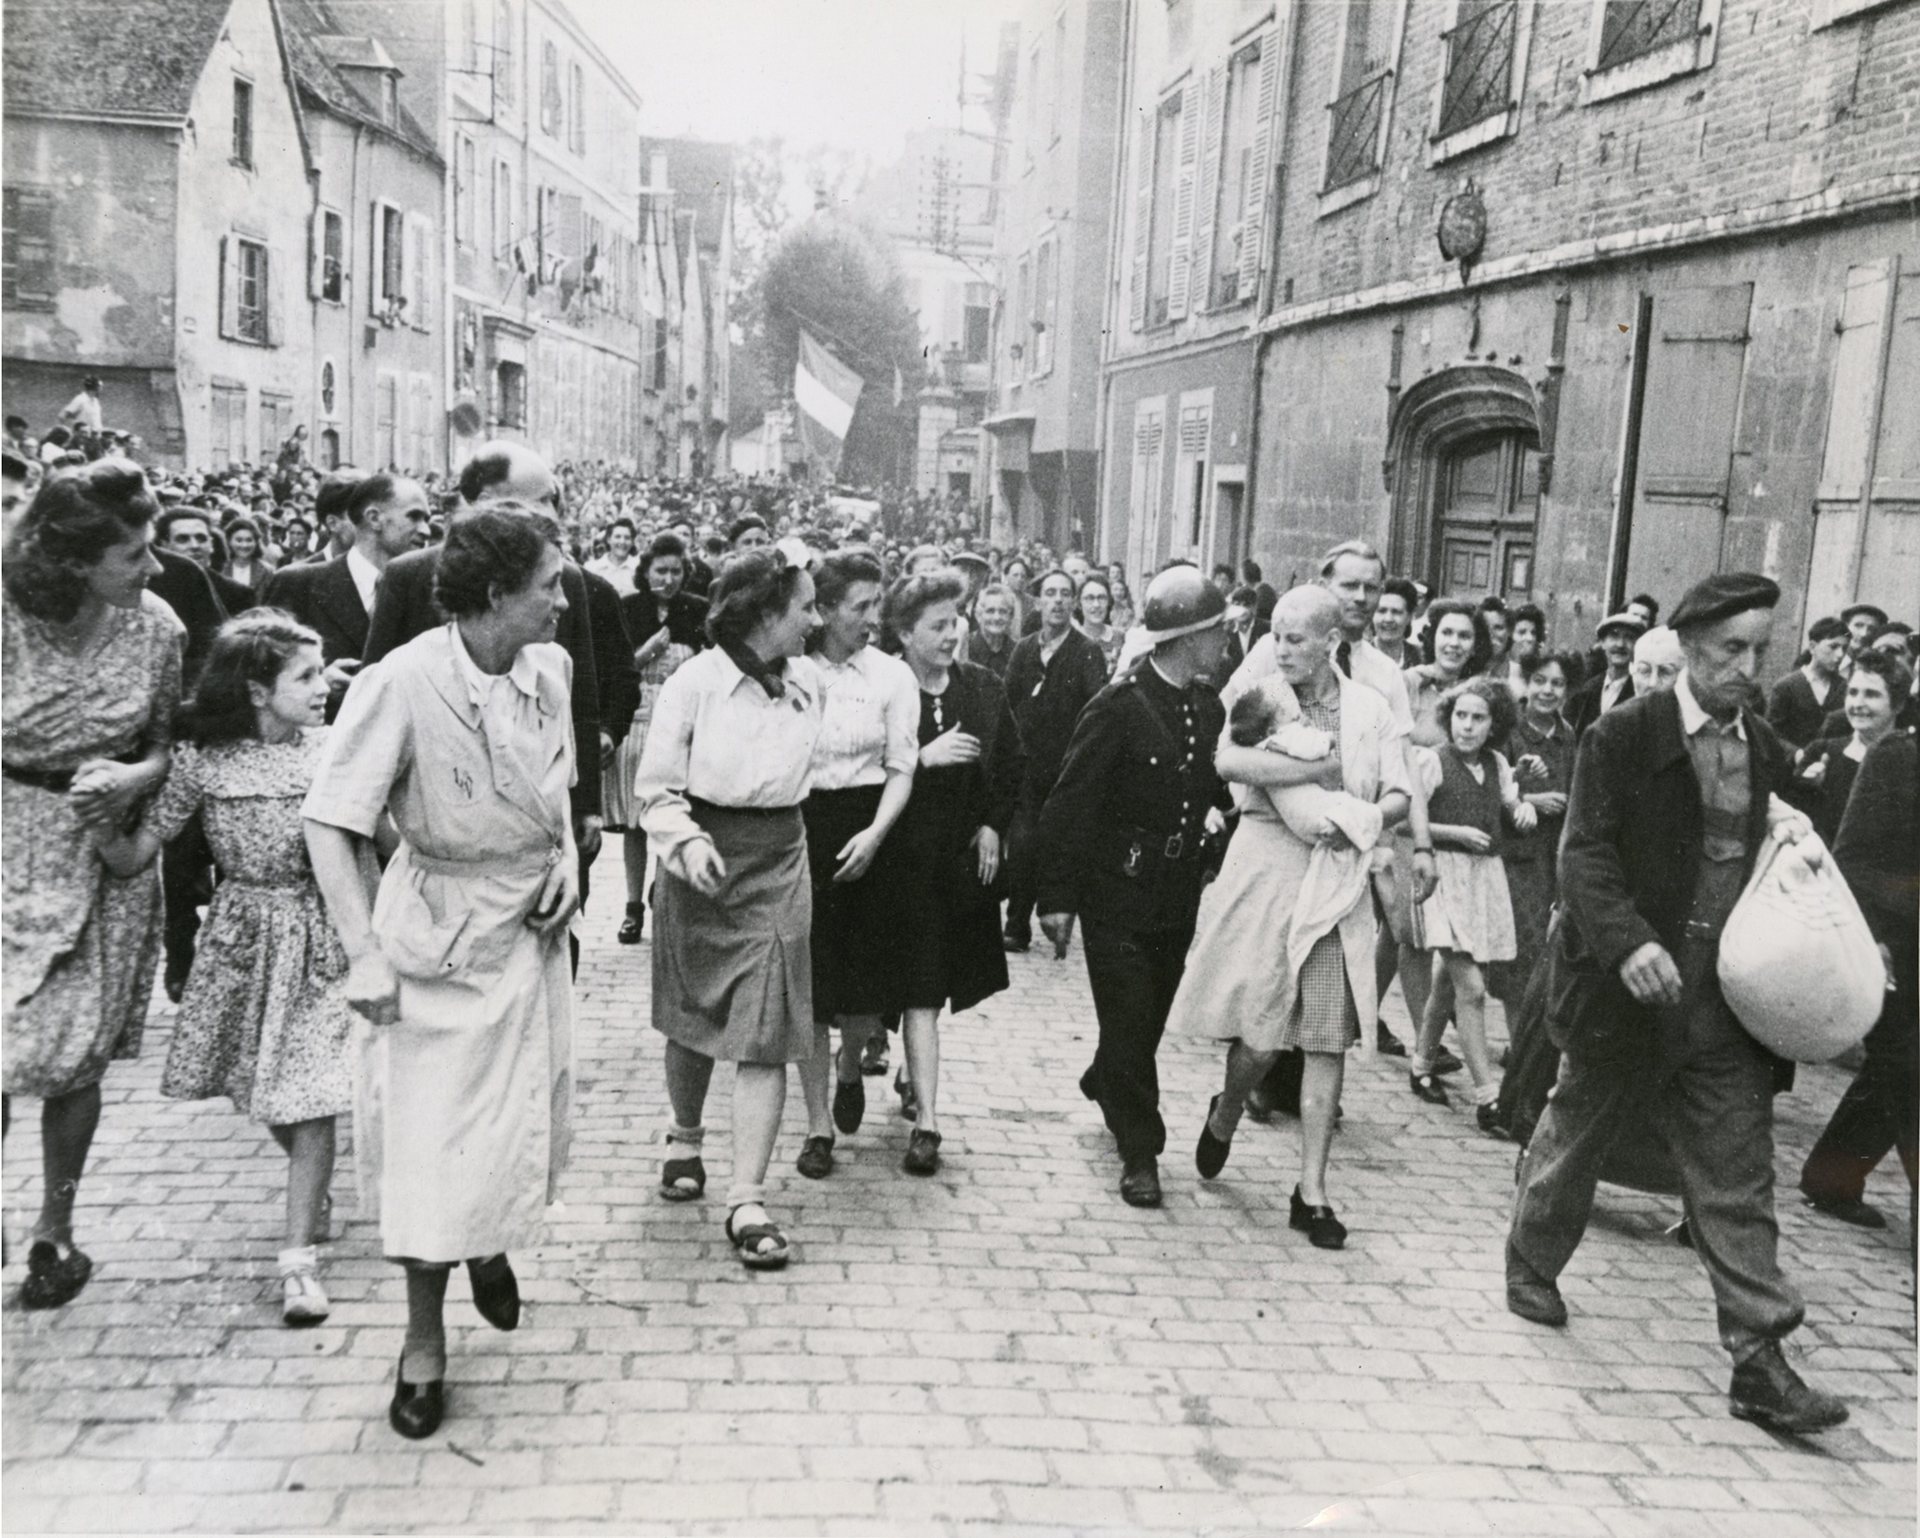 Fotó: Robert Capa: Borotvált fejű francia nő, akinek gyereke született egy német katonától.<br />Chartres, Eure-et-Loir, 1944. augusztus 18. © Robert Capa / Magnum Photos <br /><br />Robert Capa 1944. augusztus 18-án a franciaországi Chartres városában készítette el világhírű fotóját, amelyet maga élete legjobb felvételének tartott.<br />„Döbbenetes volt a német katonától származó gyereket magához szorító nő és körülötte az eltorzult, gyűlölködő arcok. Hát ezt szeretem, mert sikerült emberi mélységeket megmutatni rajta.” (In: Markos György: Barátom, Capa)